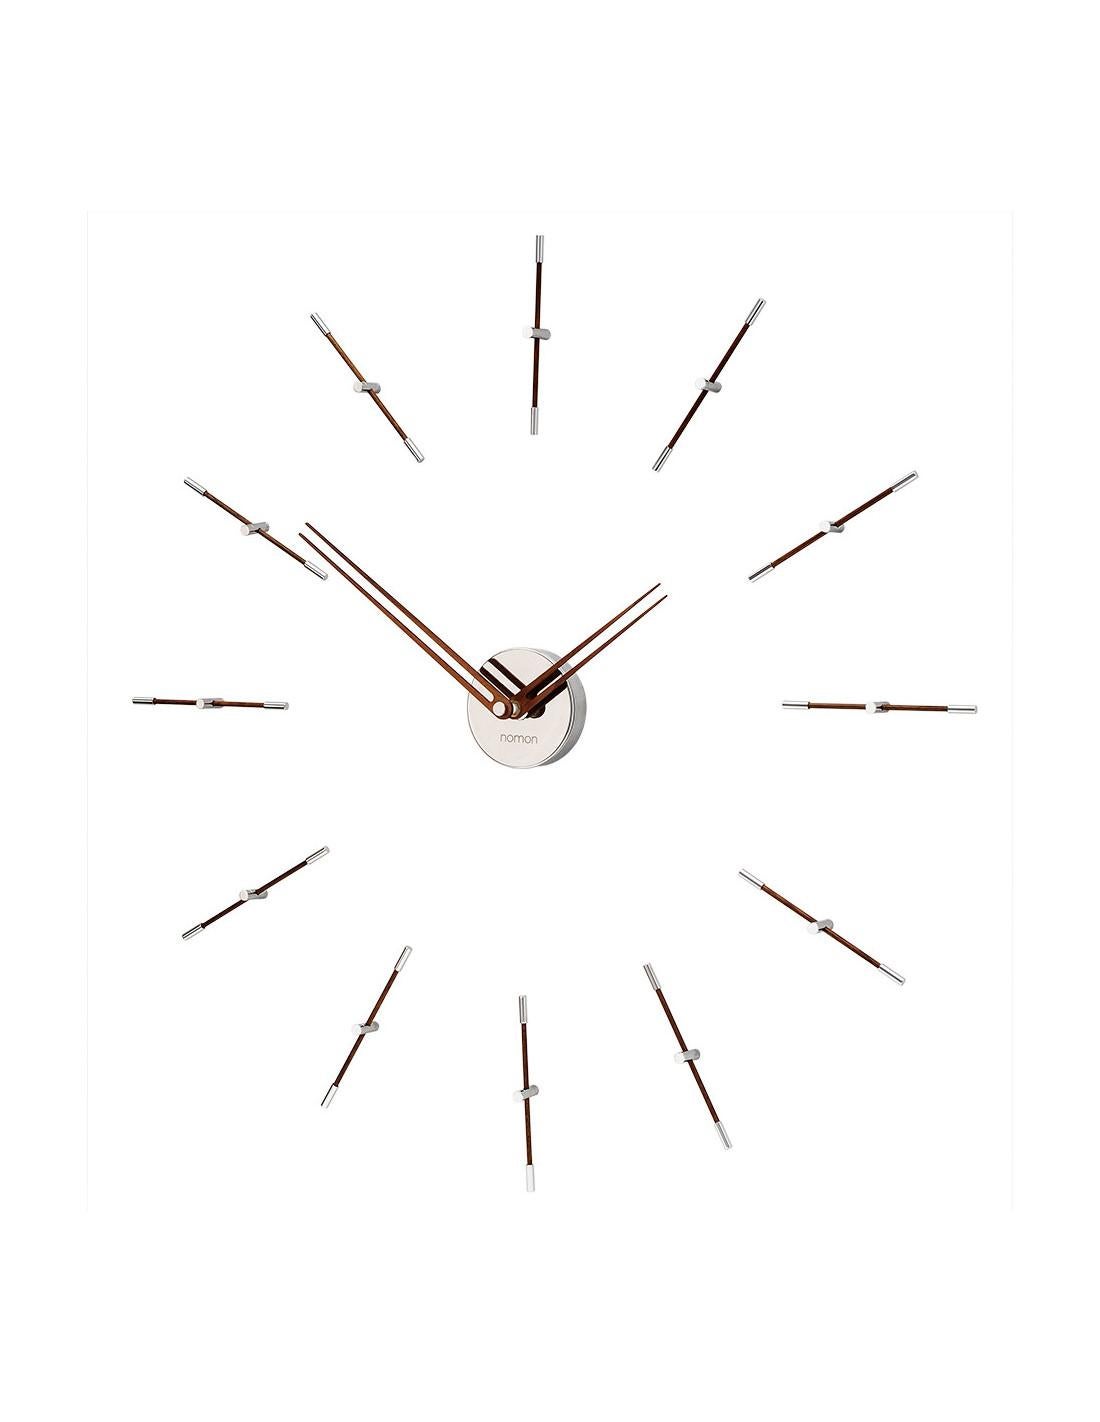 Die 12 N Mini Merlin-Uhr ist ein sehr vielseitiges und originelles Accessoire, das sich ideal zur Vervollständigung der Dekoration moderner Fußböden eignet, sowohl zu Hause als auch in Unternehmen oder Büros. Dieses Design ist elegant und bringt